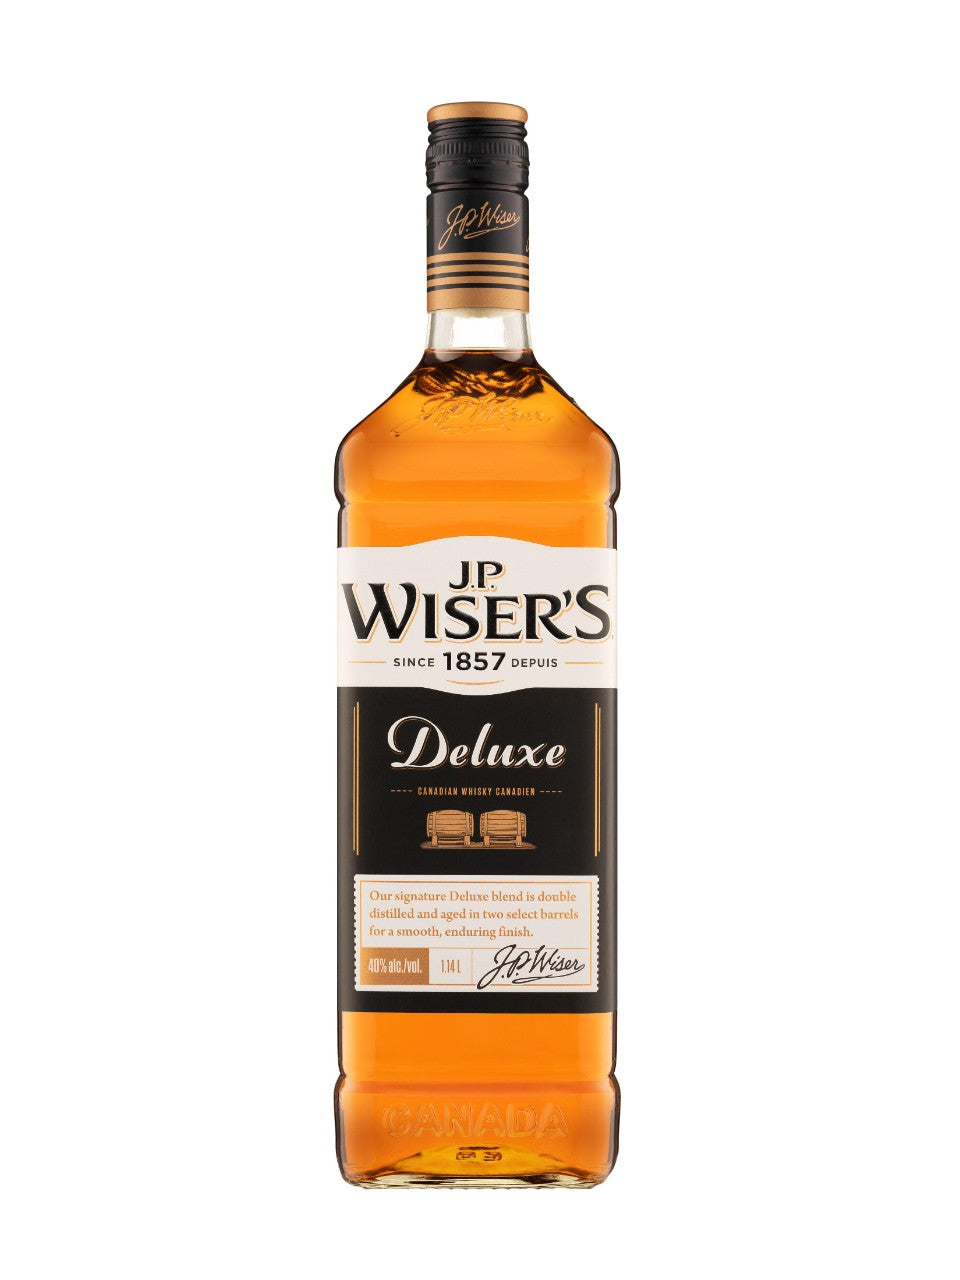 J.P. Wiser's Deluxe Whisky 1140 mL bottle